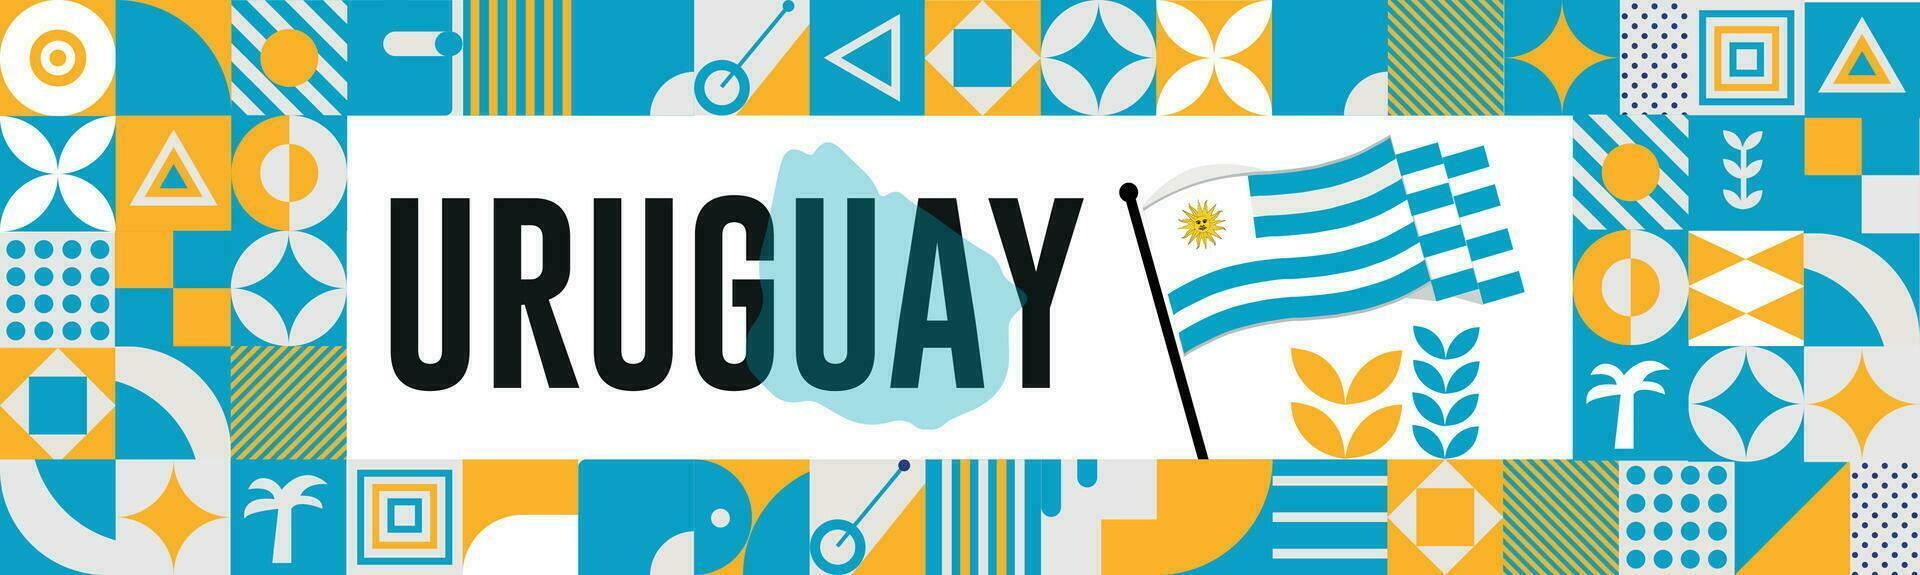 Uruguay Karte und angehoben Fäuste. National Tag oder Unabhängigkeit Tag Design zum Uruguay Feier. modern retro Design mit abstrakt Symbole. Vektor Illustration.